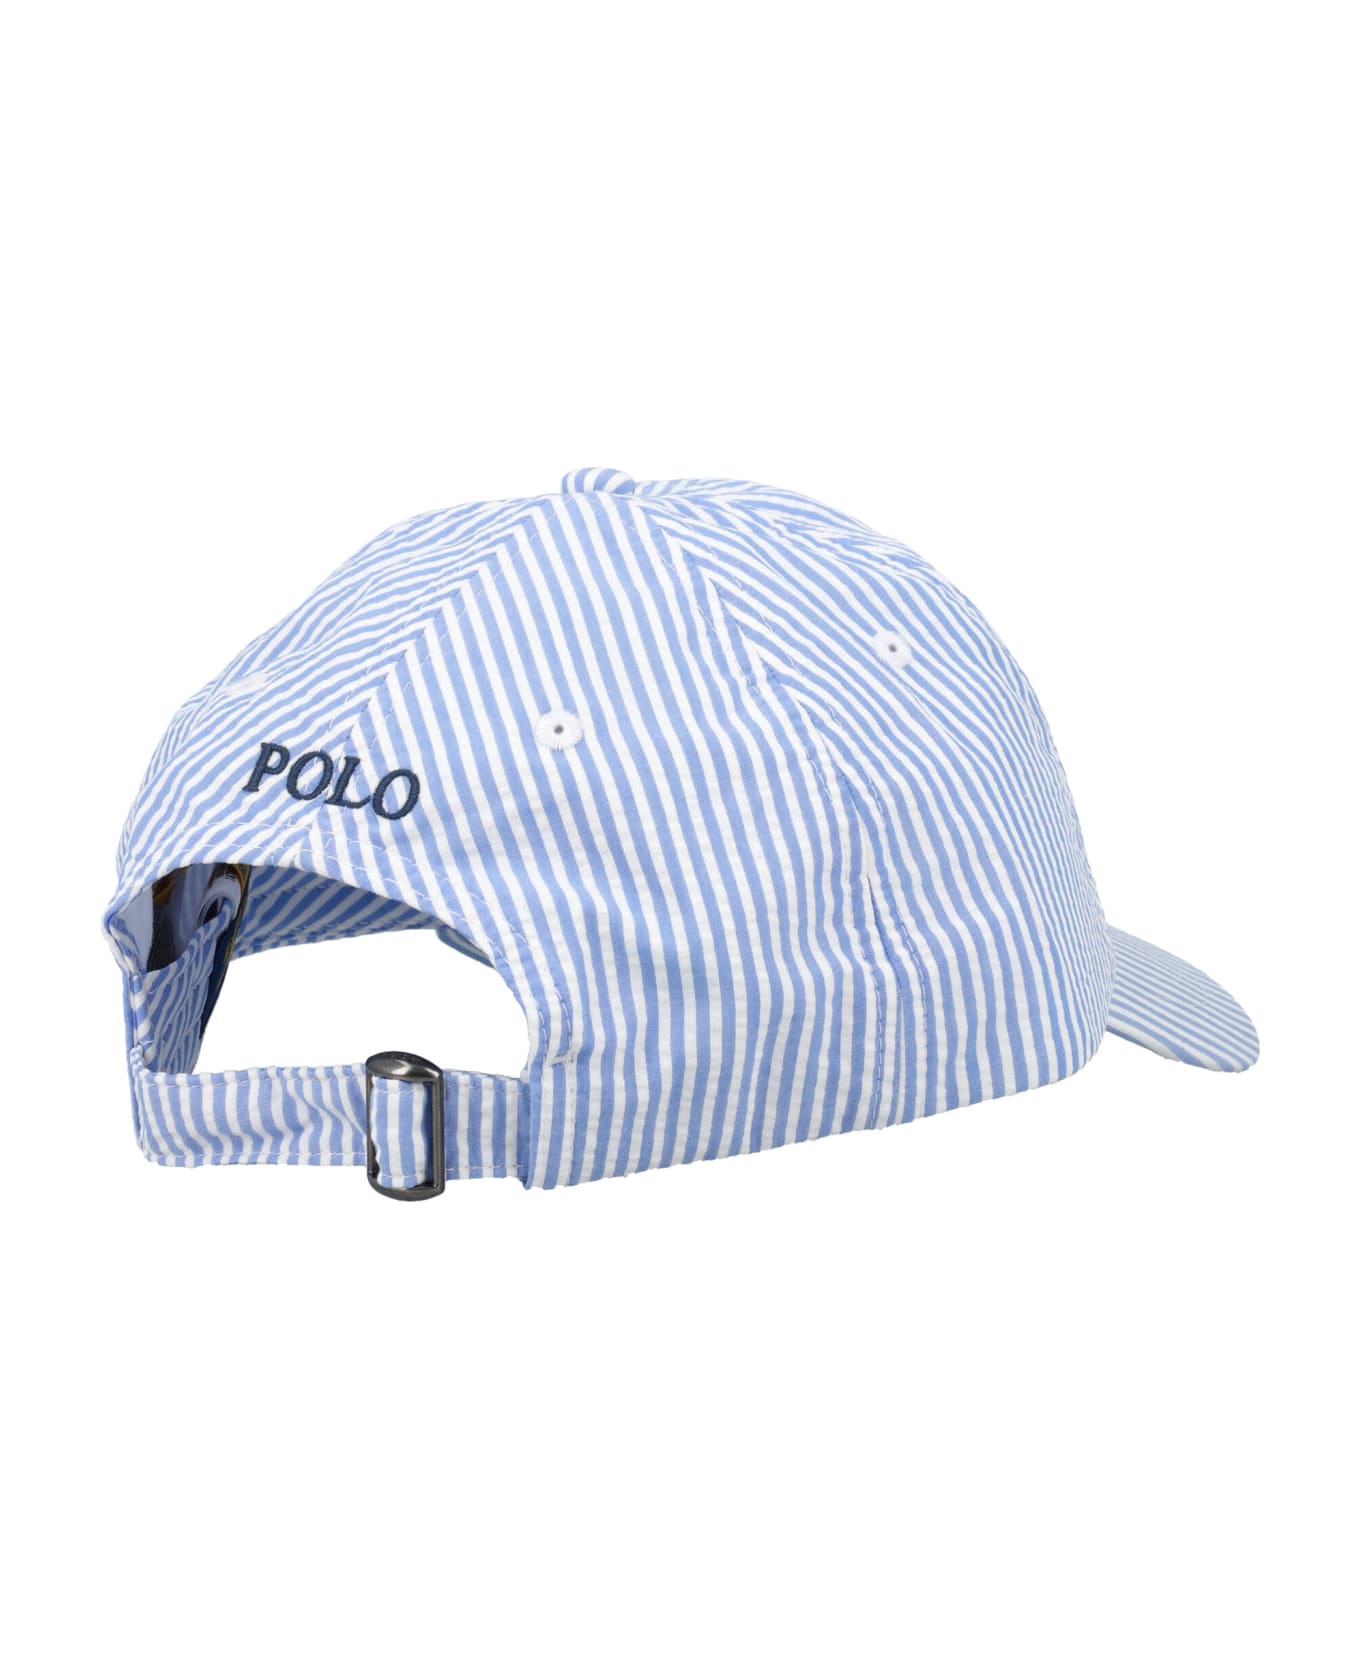 Polo Ralph Lauren Baseball Cap - LIGHT BLUE